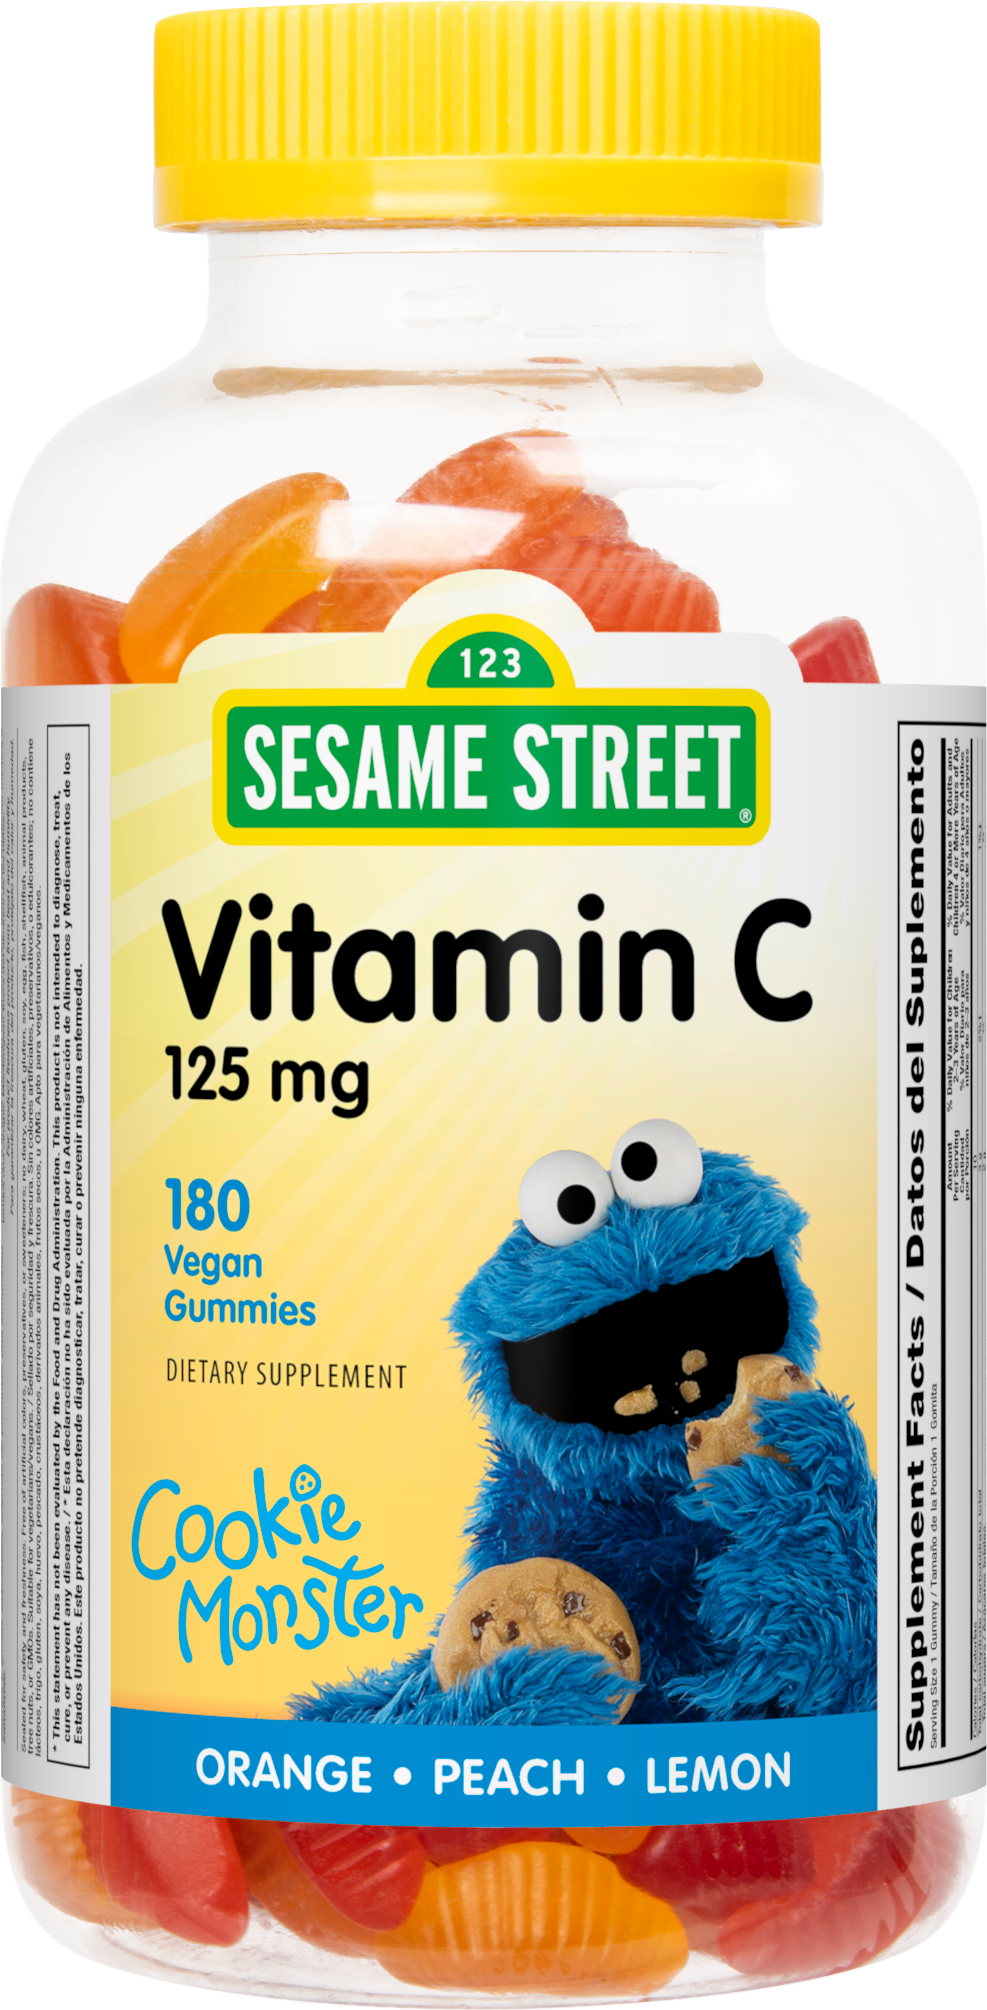 Sesame Street Vitamin C Kids Gummy by Webber Naturals, 125 mg of Vitamin C Per Gummy, Non GMO, Free of Gluten, Dairy, Peanut & Gelatin, For Children Age 3 & Up, Immune, Bone & Teeth Support, 180 Count